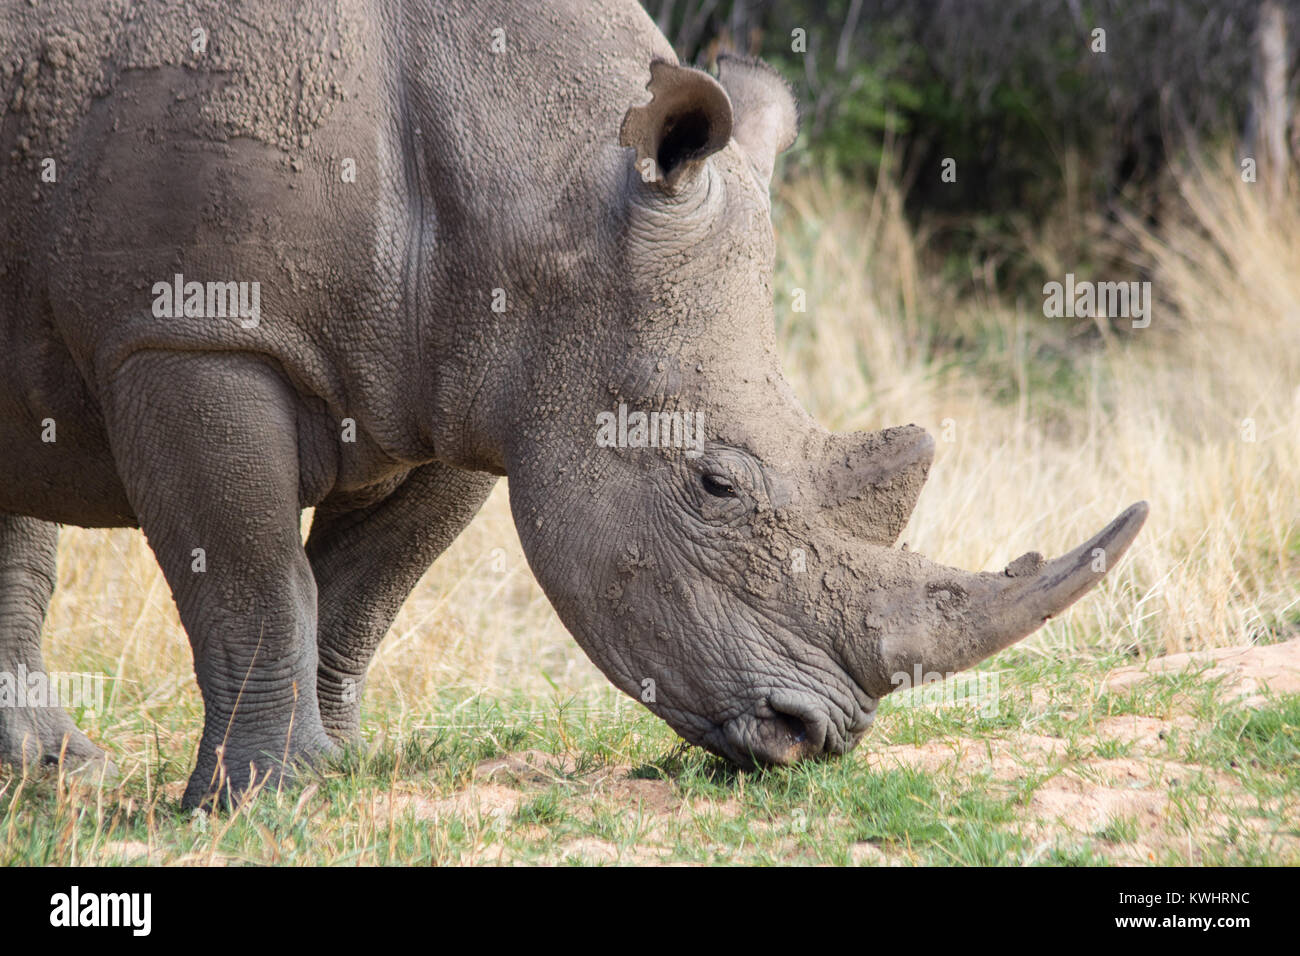 White Rhino Beweidung in Namibia. Toll dieser gefährdeten Arten Roaming in freier Wildbahn zu sehen Stockfoto